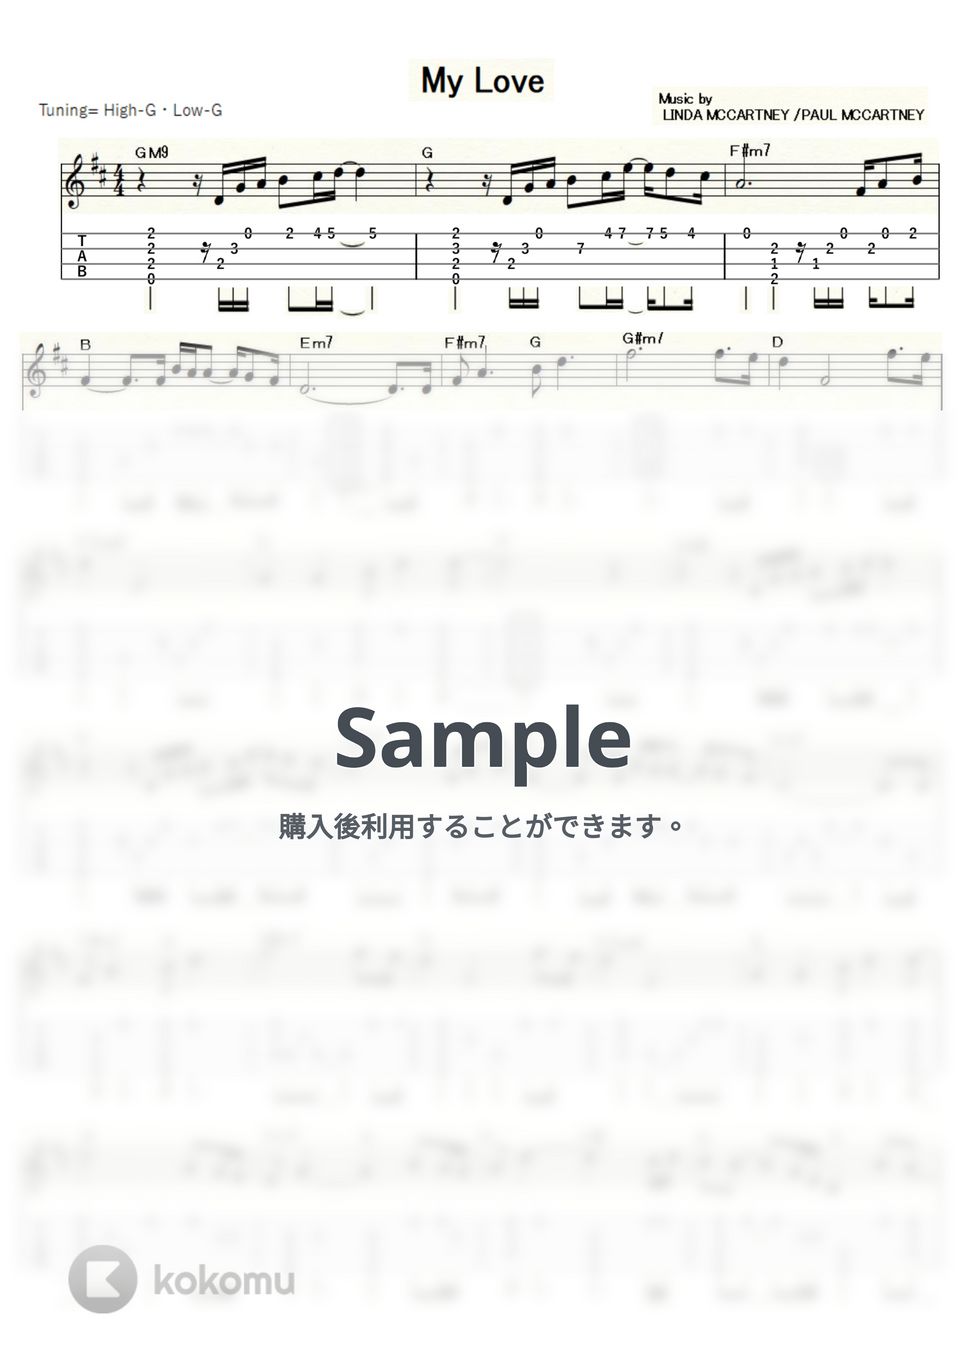 ポール・マッカートニー&ウイングス - My Love (ｳｸﾚﾚｿﾛ/High-G・Low-G/中級) by ukulelepapa